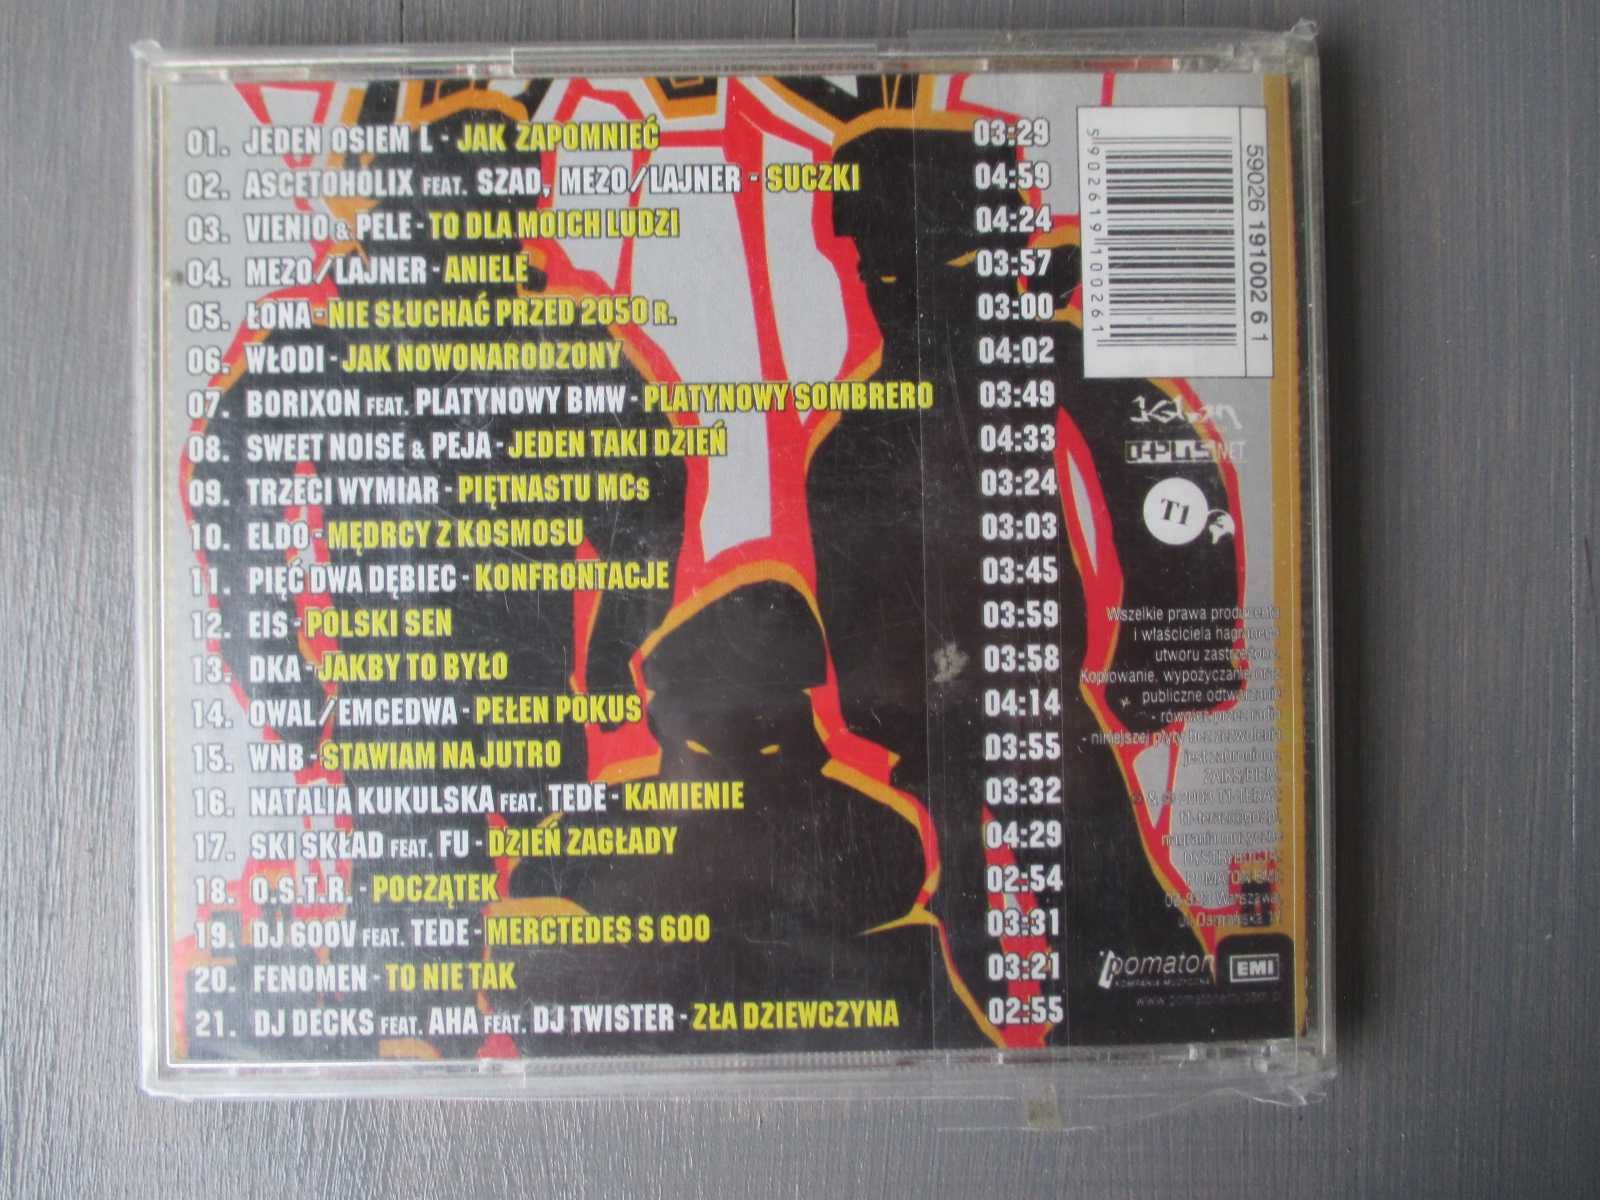 CD - zestaw 4 płyt w cenie jednej